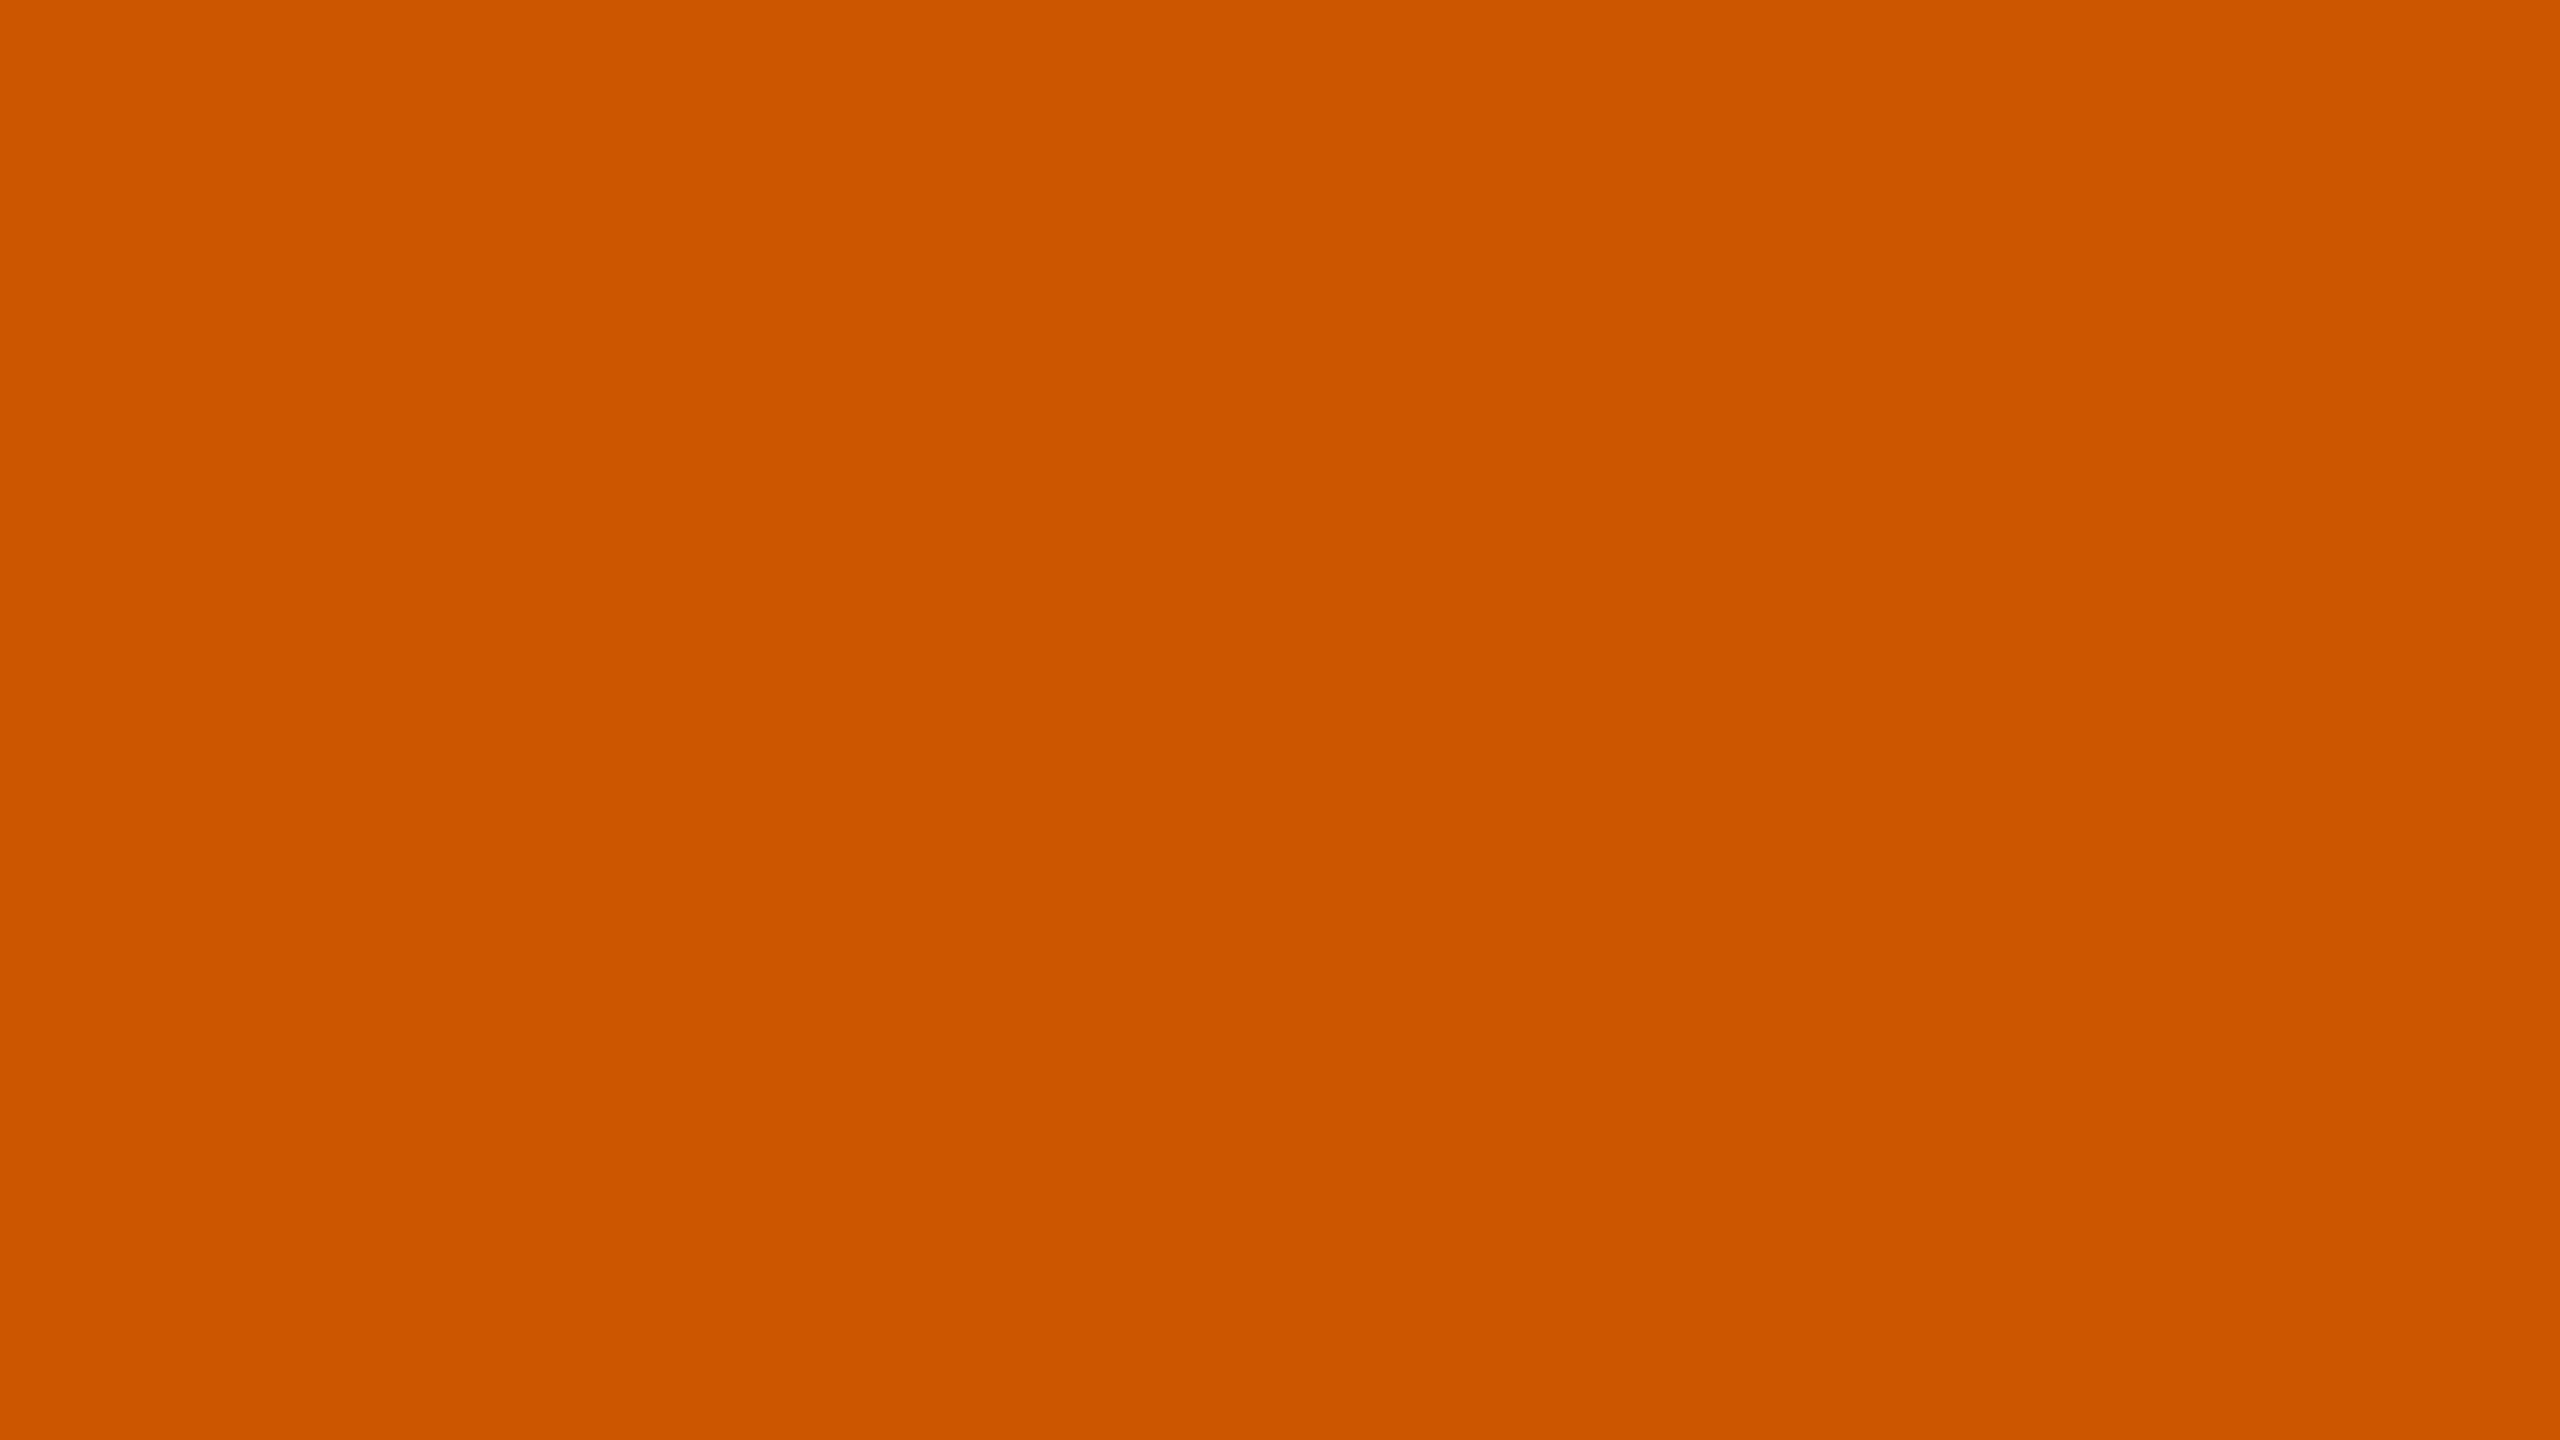 2560 x 1440 · jpeg - Burnt Orange Wallpaper - WallpaperSafari